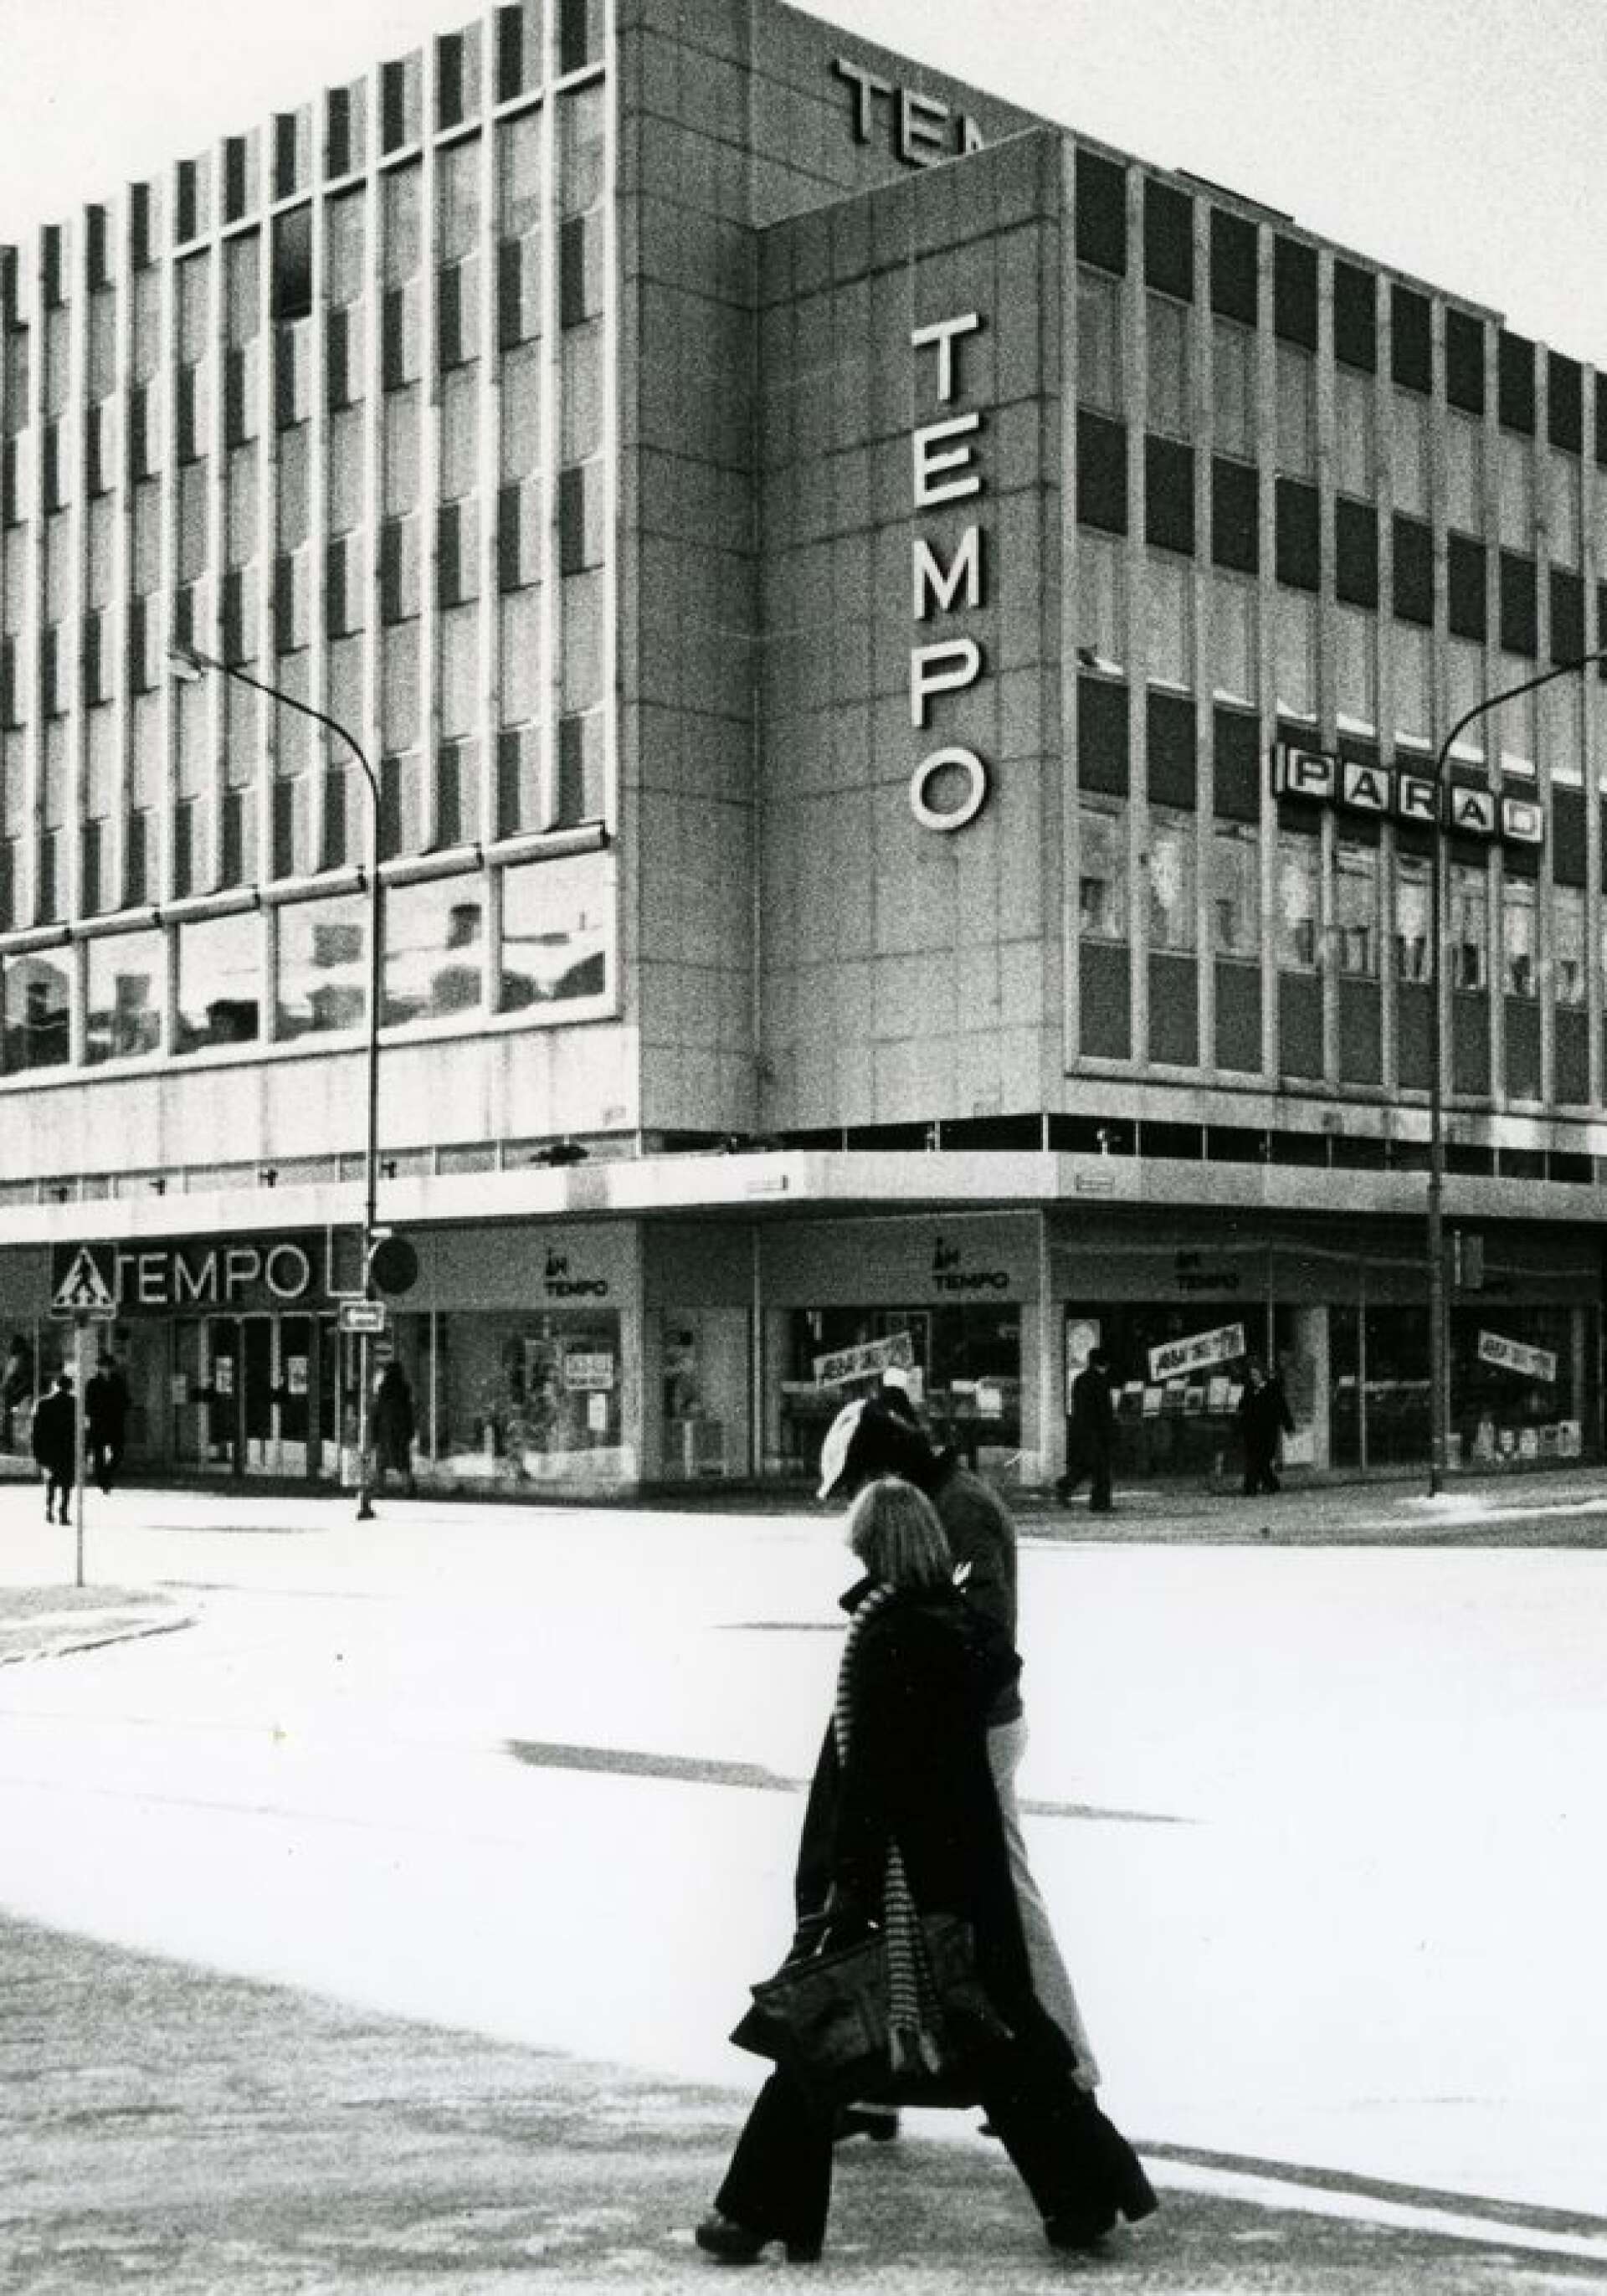 Tempos nybygge i hörnet av Drottninggatan och Järnvägsgatan under 1970-talet. 1985 öppnade Åhléns, som då ägde Tempo/Epa varuhus i eget namn här.